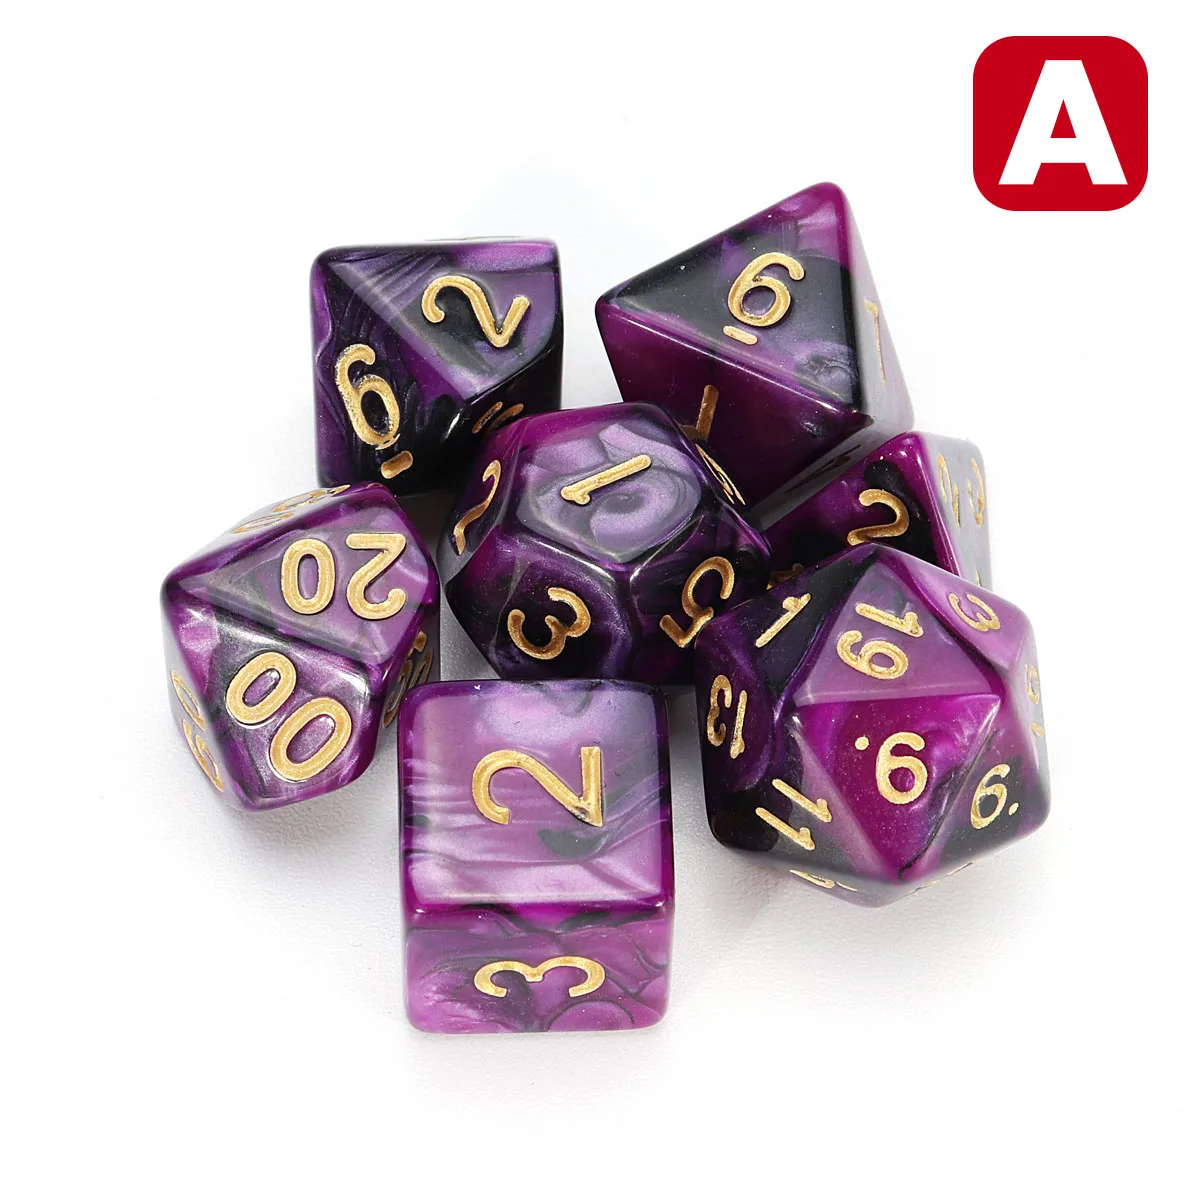 7 шт. игральные кости набор многогранные DnD смешанные цветные кости для РПГ Подземелья и Драконы ролевые игры игра, настольная игра кости набор+ сумка для хранения - Цвет: A Purple Black